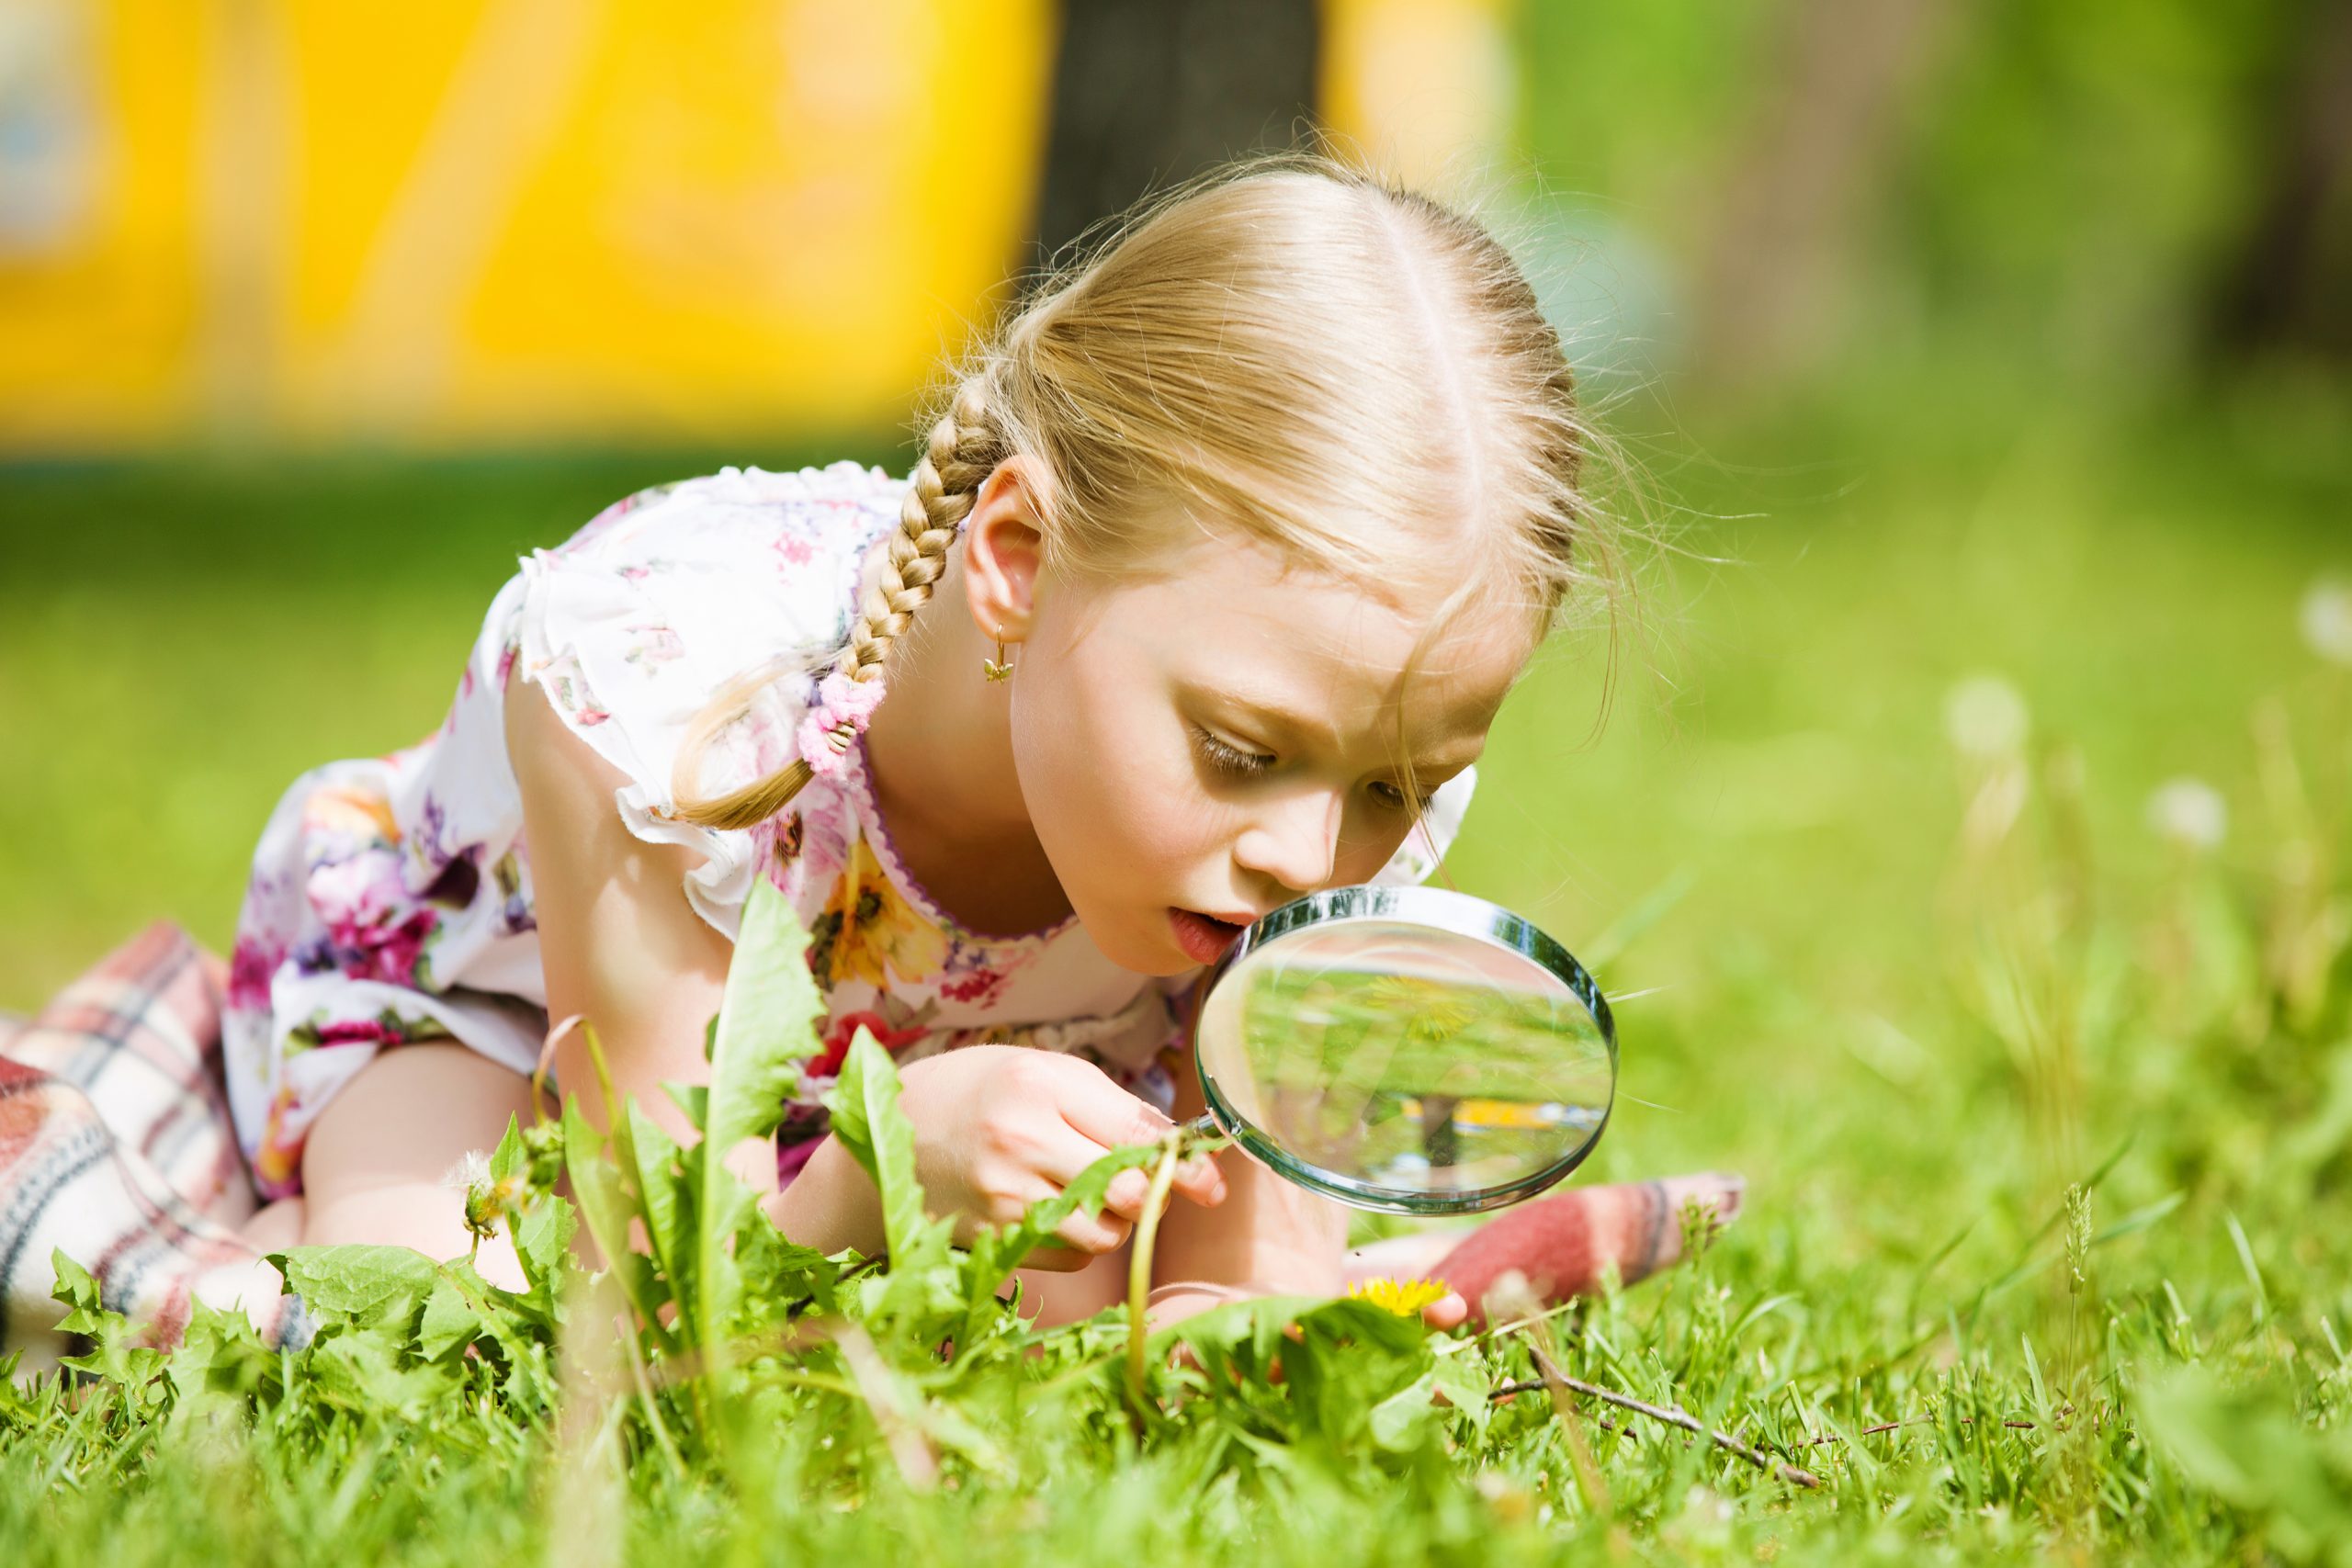 Дети очень любознательны. Дети и природа. Девочка с лупой в траве. Любознательный ребенок. Изучение природы.